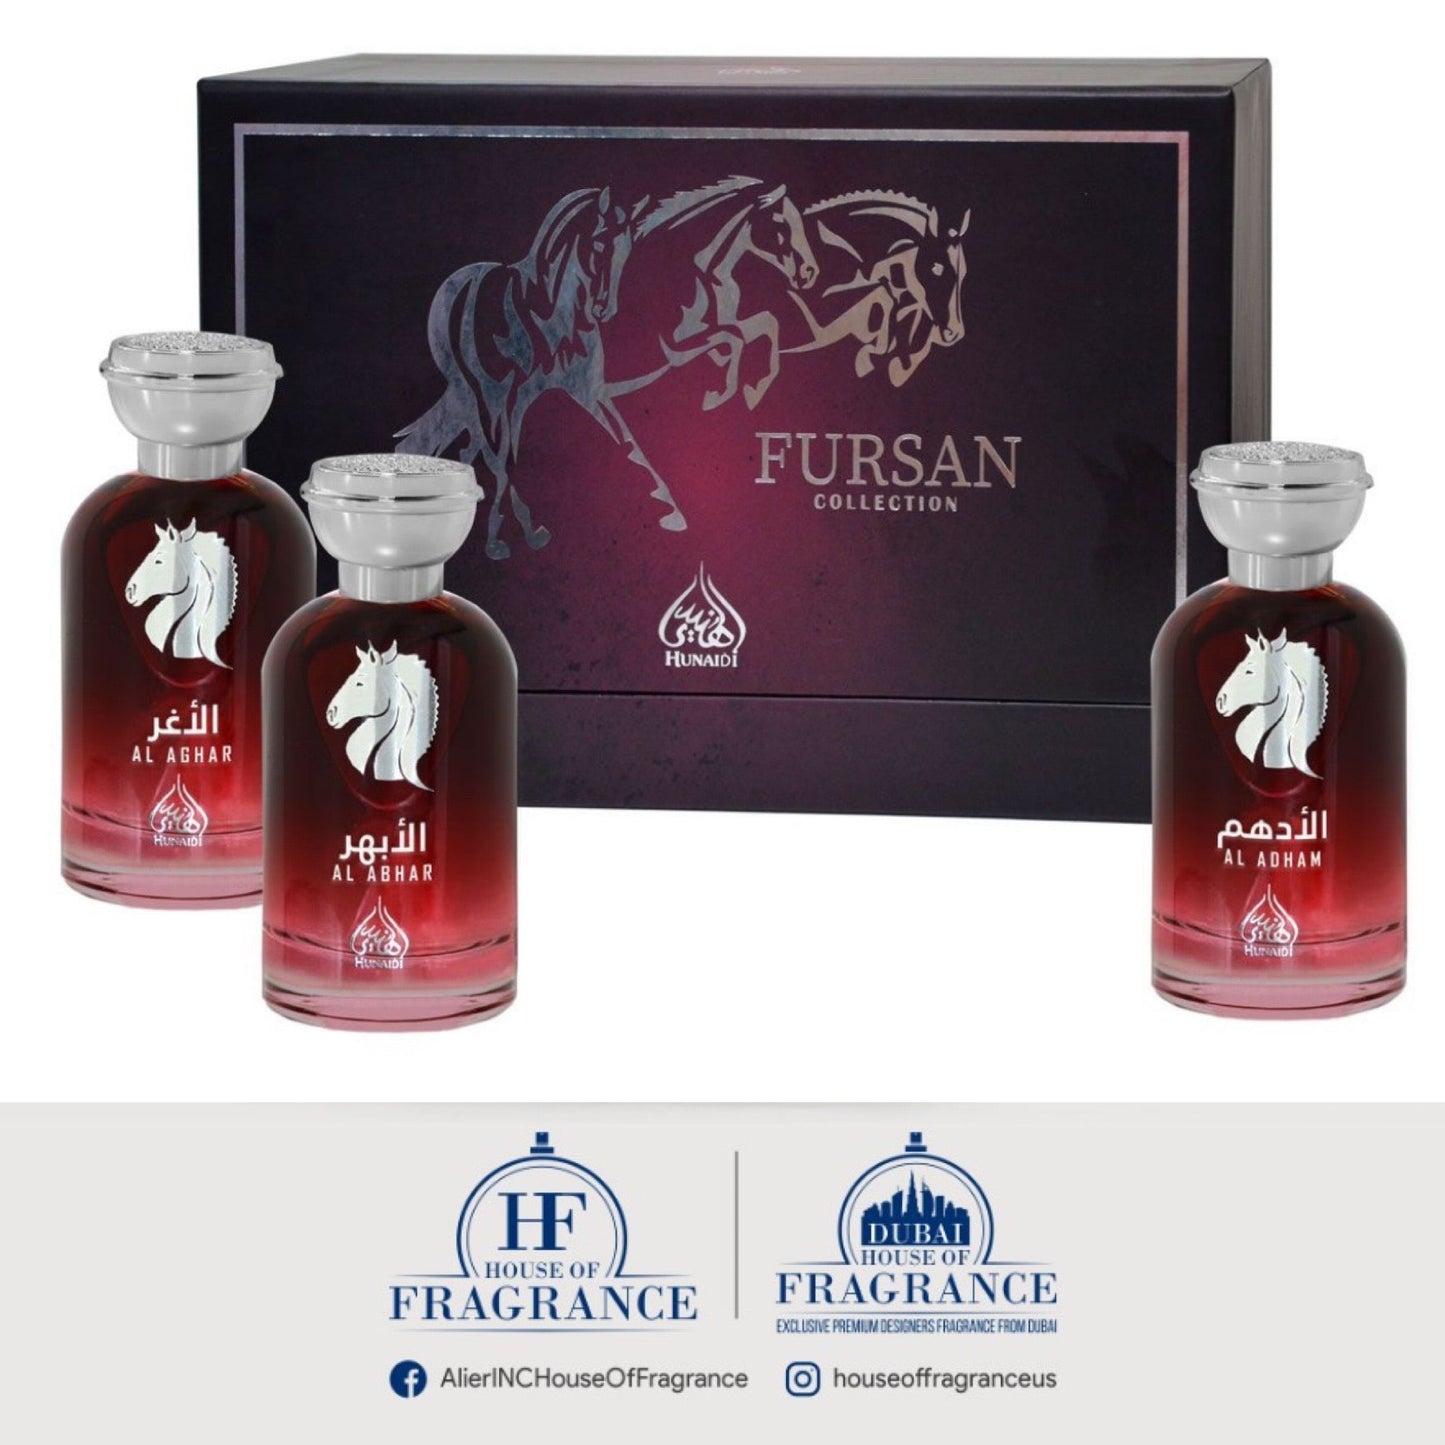 Fursan Luxury Collection